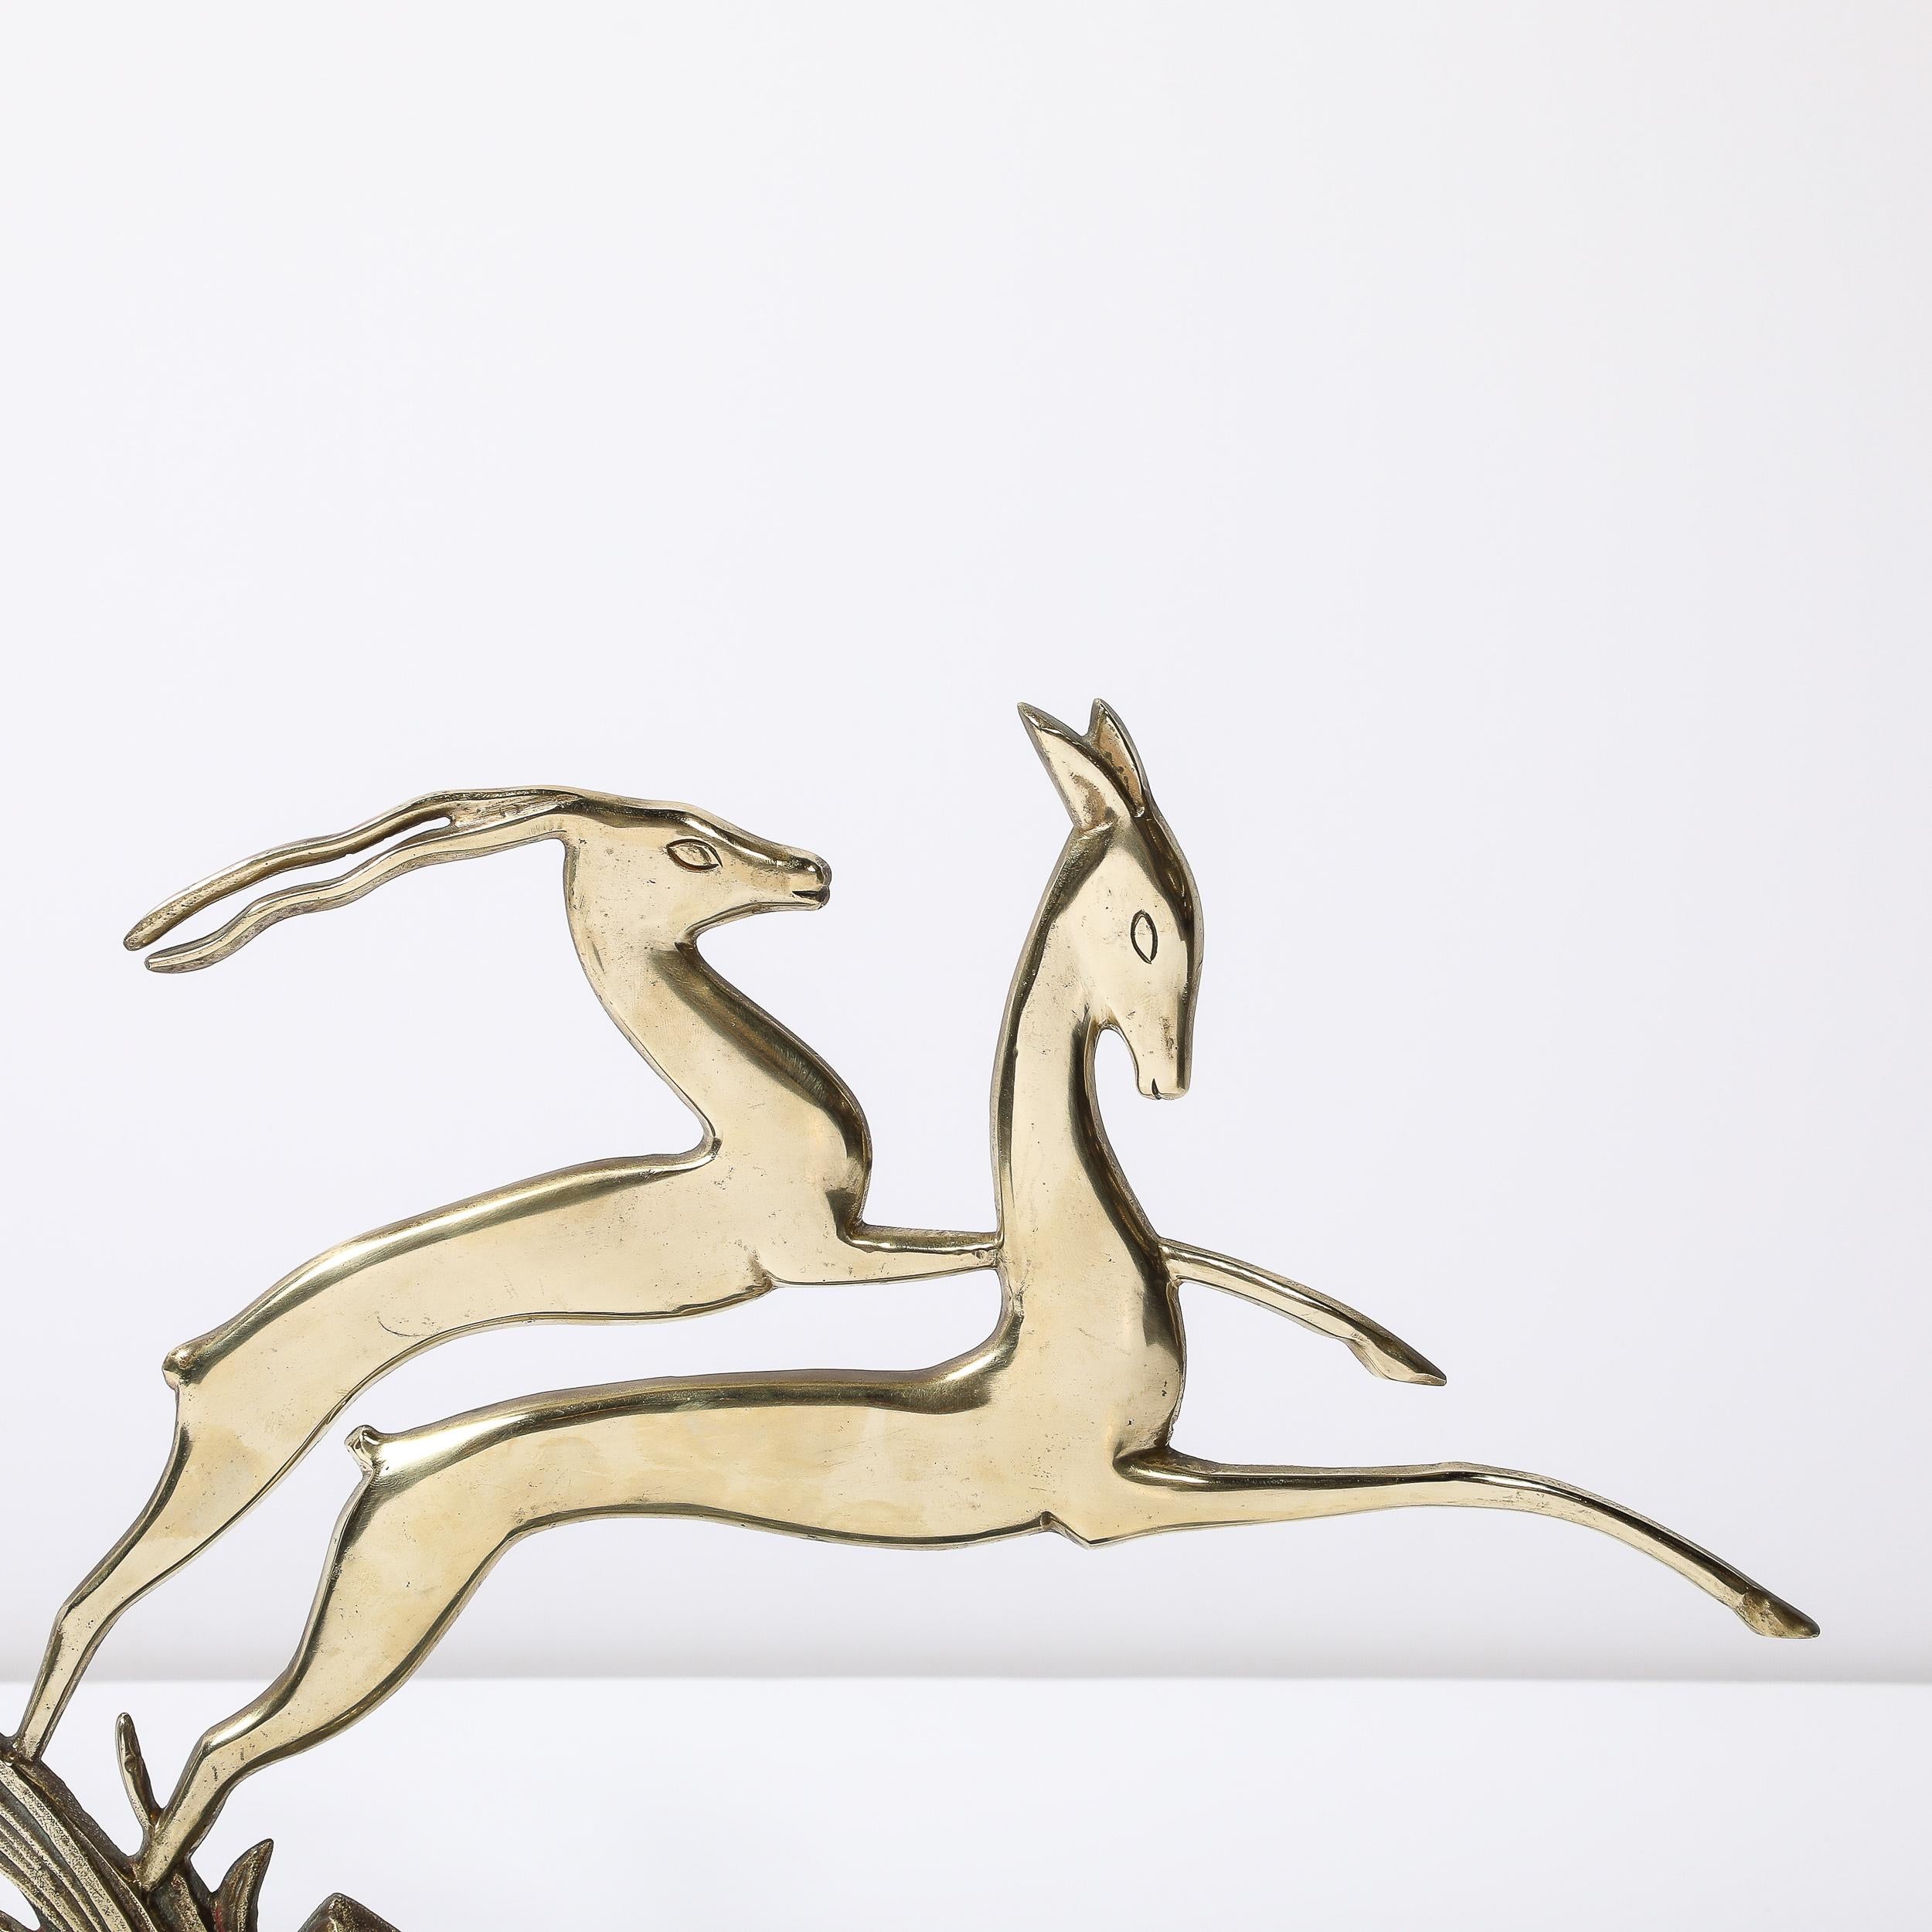 Cette magnifique sculpture Art déco de gazelle bondissante en laiton poli sur socle en marbre noir est originaire de France, vers 1930. Cette sculpture ouverte en laiton poli brillant représente deux gazelles bondissantes, l'une avec des cornes